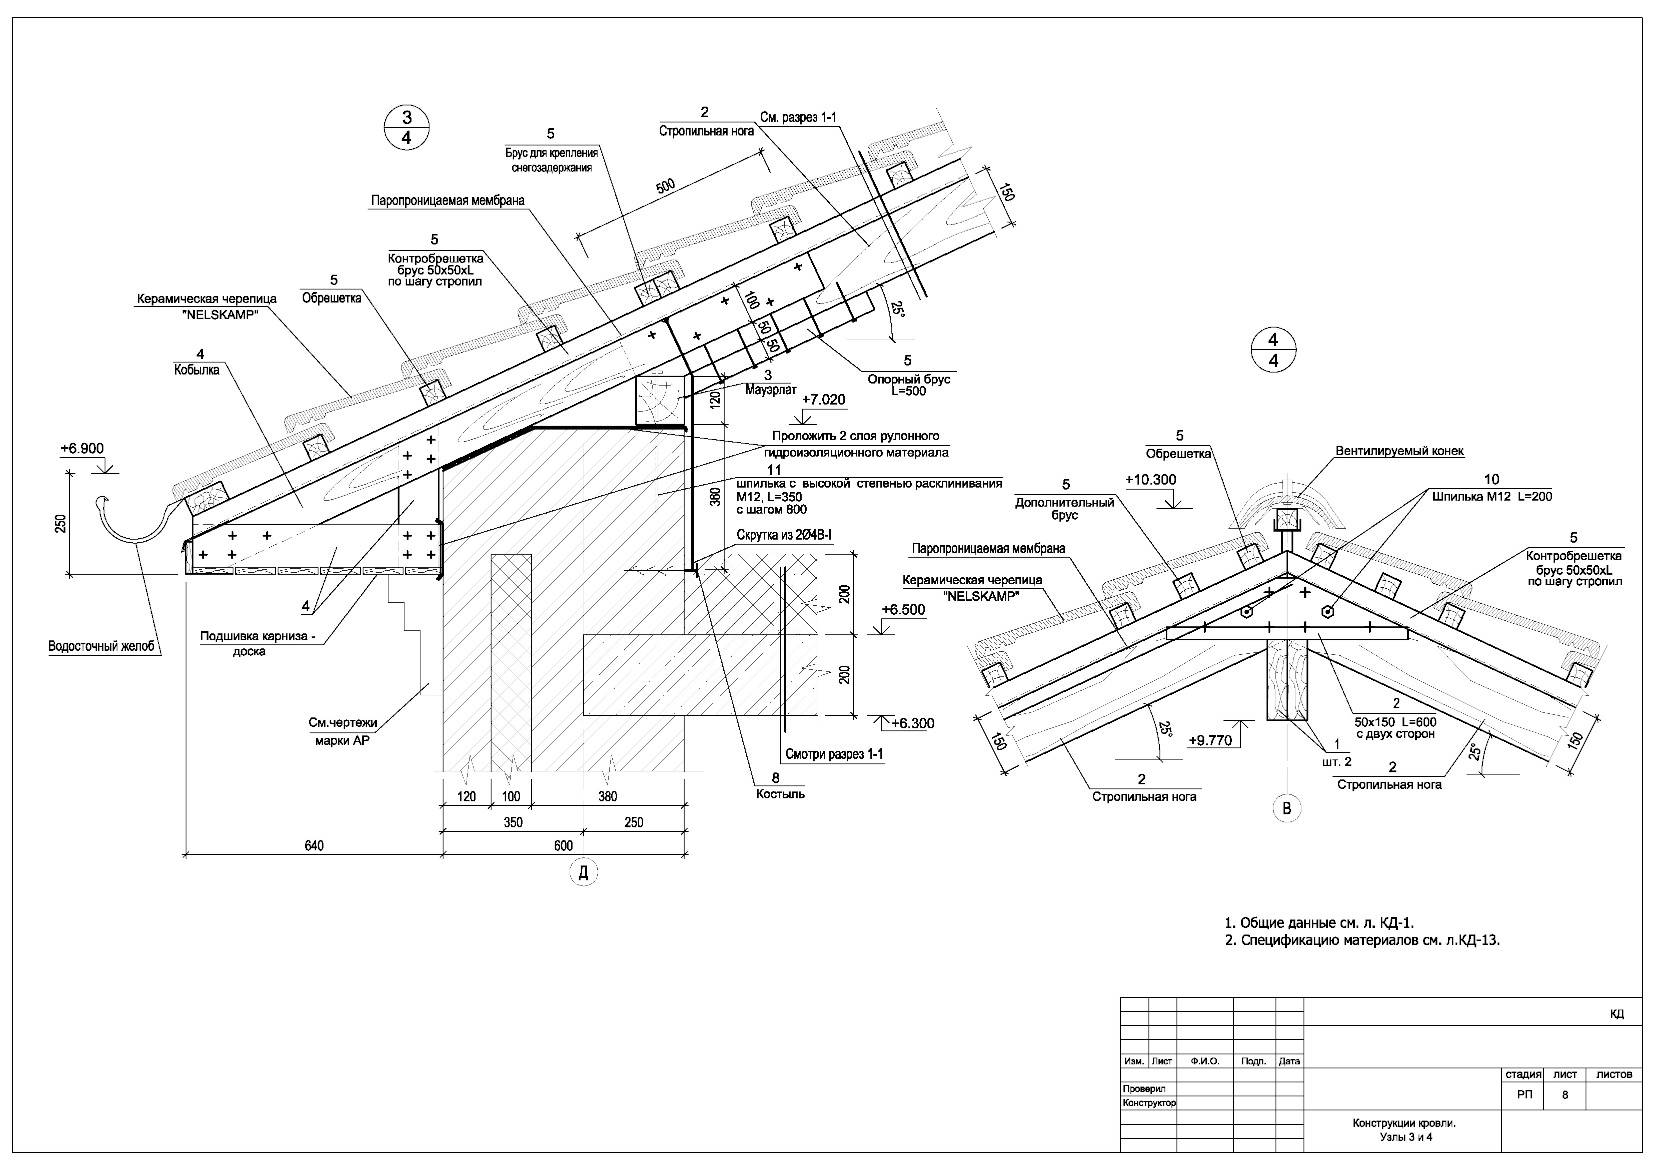 Стропильная система крыши - устройство, конструкция и составные узлы